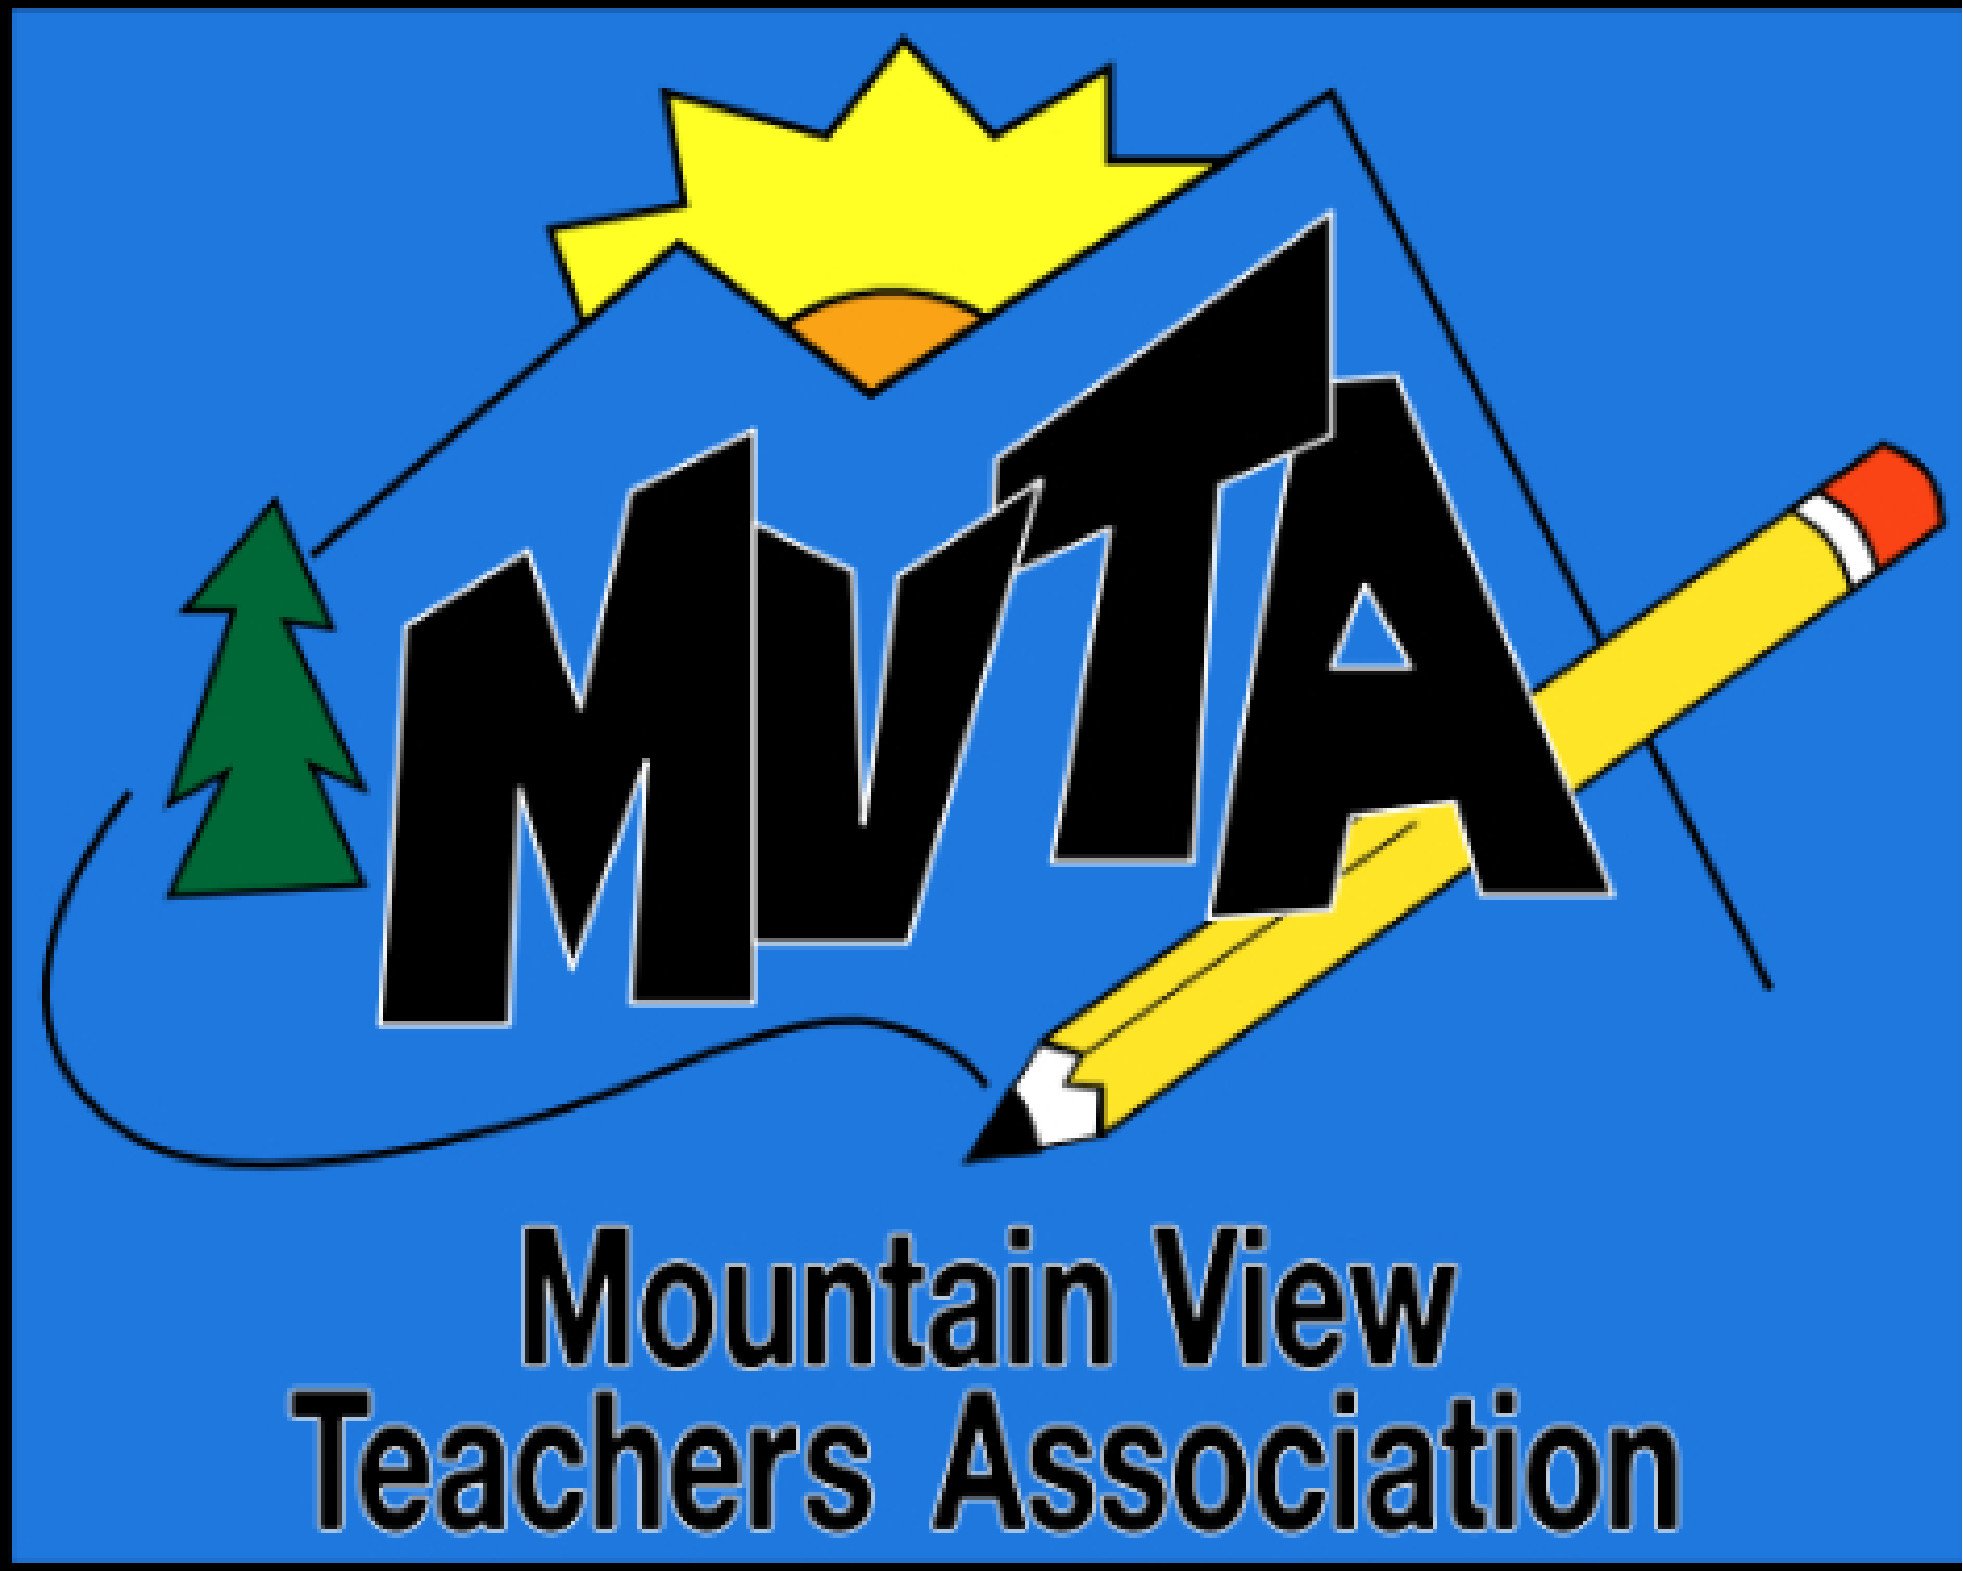 mvta-logo-black-letters-blue-bkgrnd-screenshot.JPEG